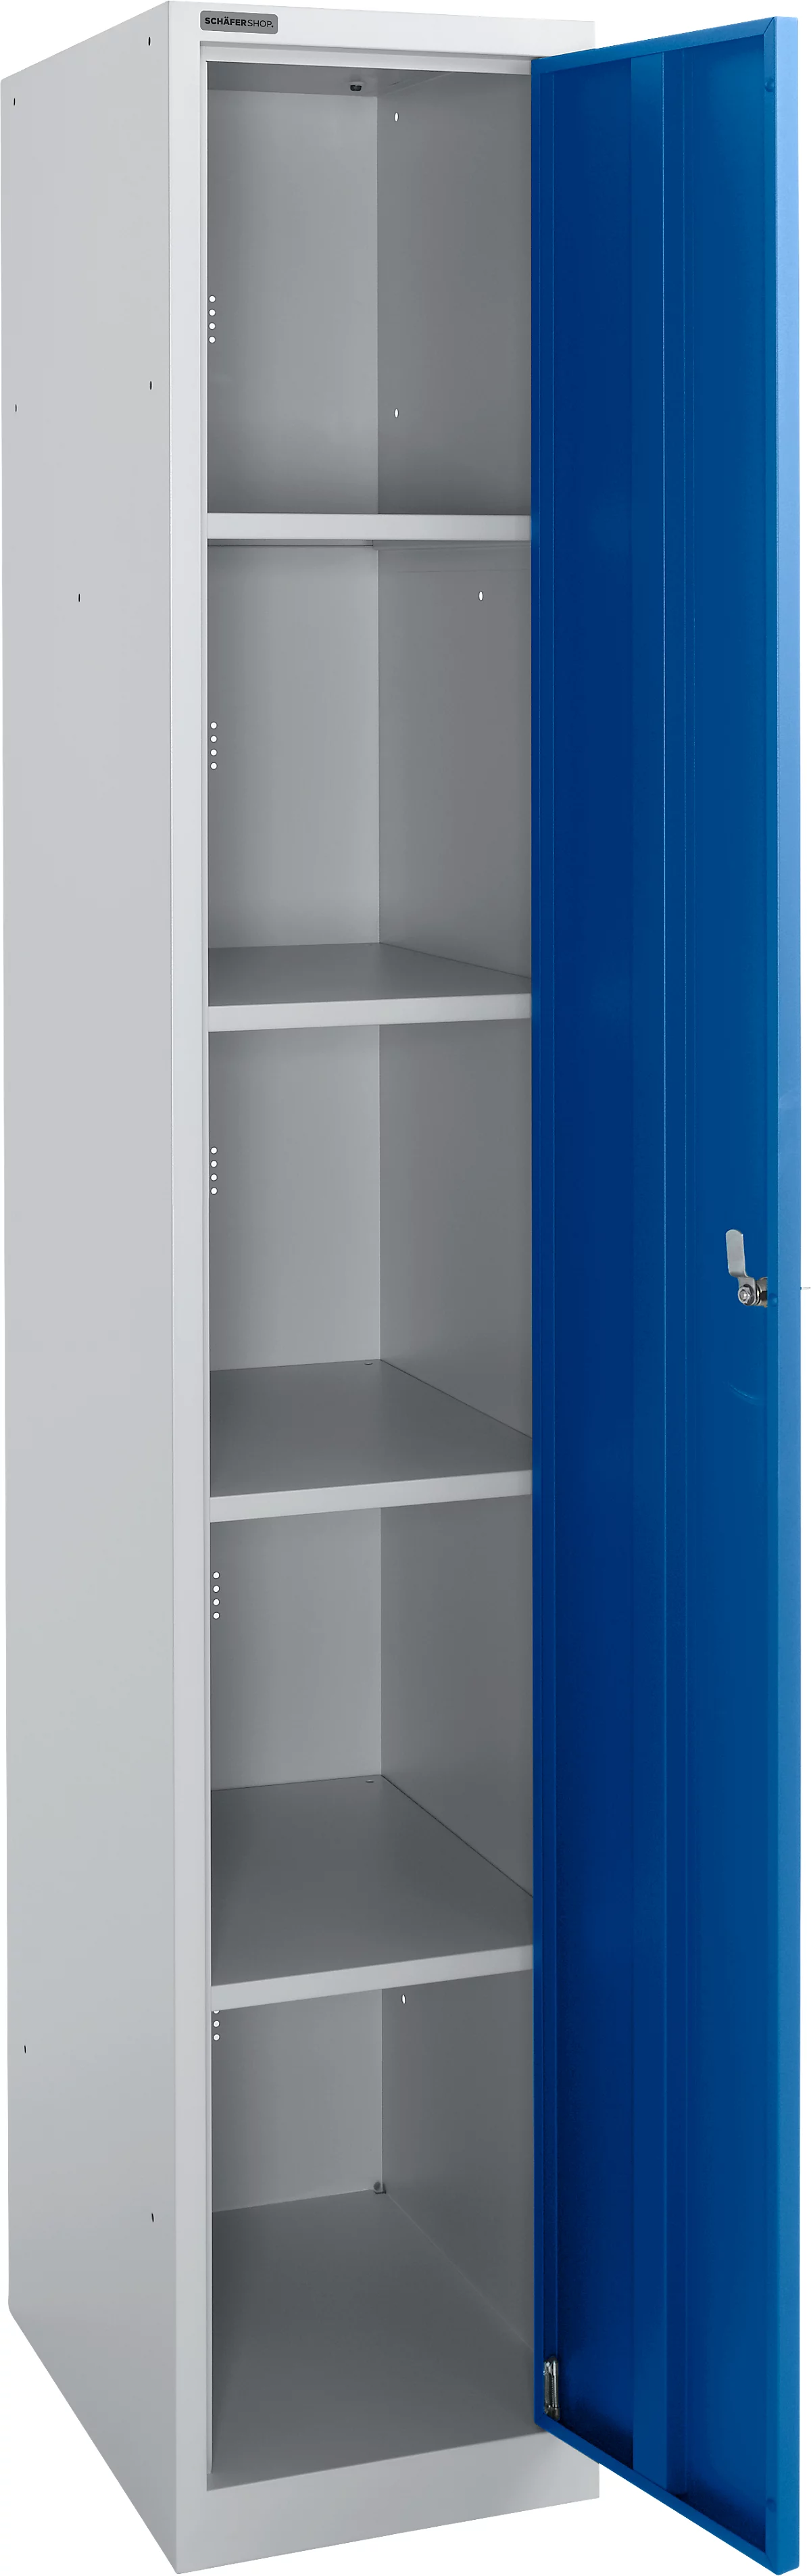 Schäfer Shop Select Armario de guardarropa, 1 compartimento de 350 mm de ancho, 5 compartimentos con 4 estantes, con cerradura, aluminio blanco/azul genciana